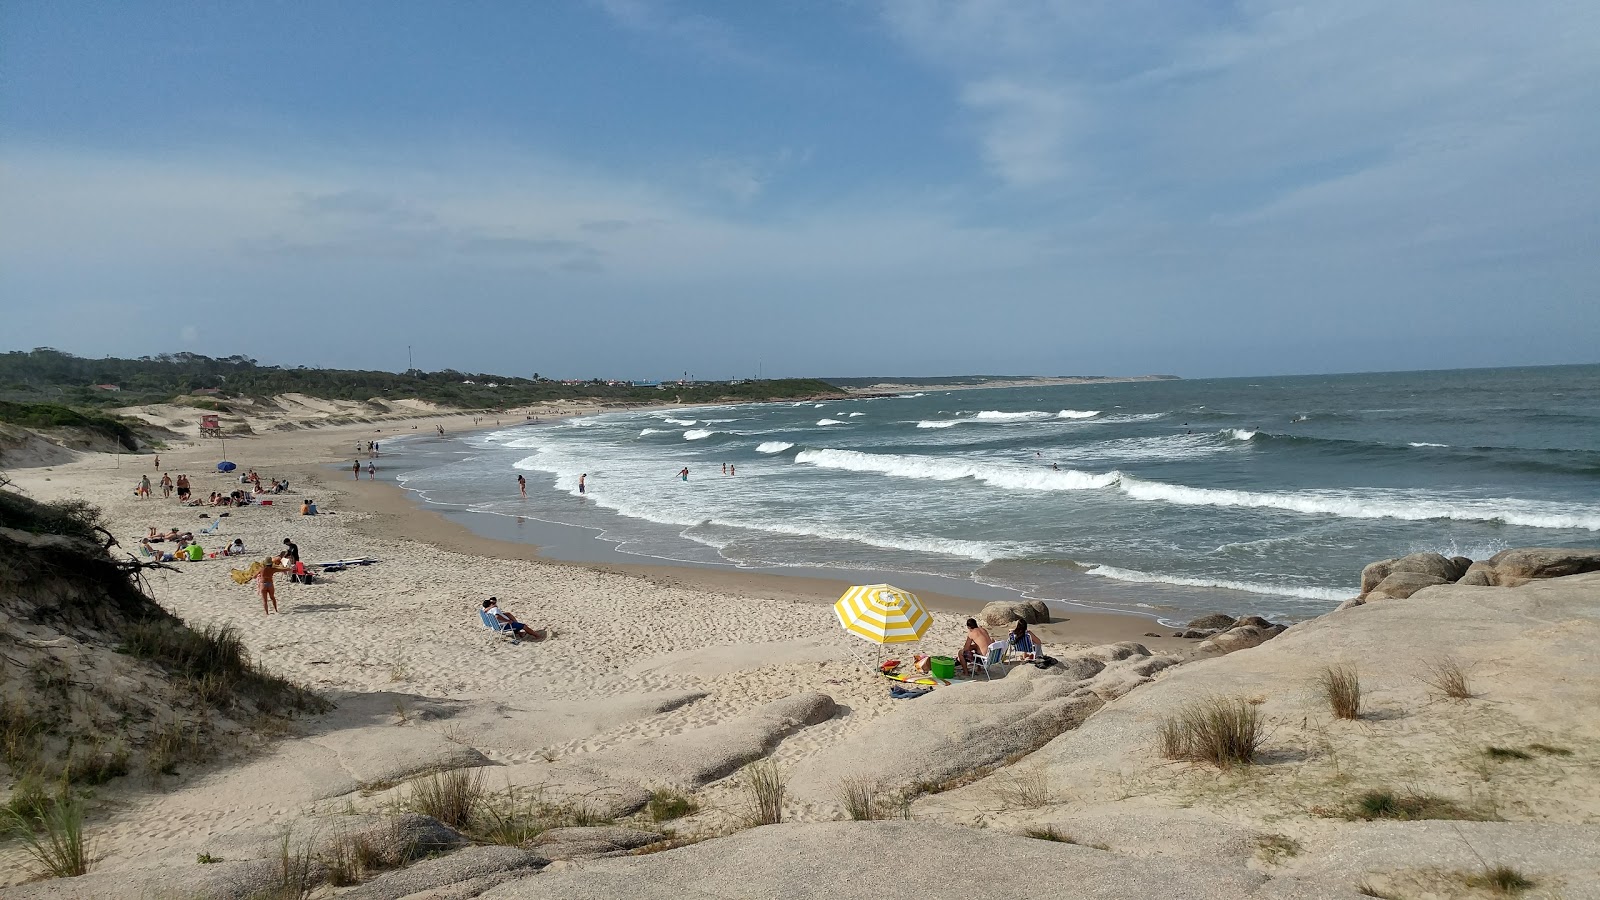 De las Achiras Beach'in fotoğrafı geniş plaj ile birlikte